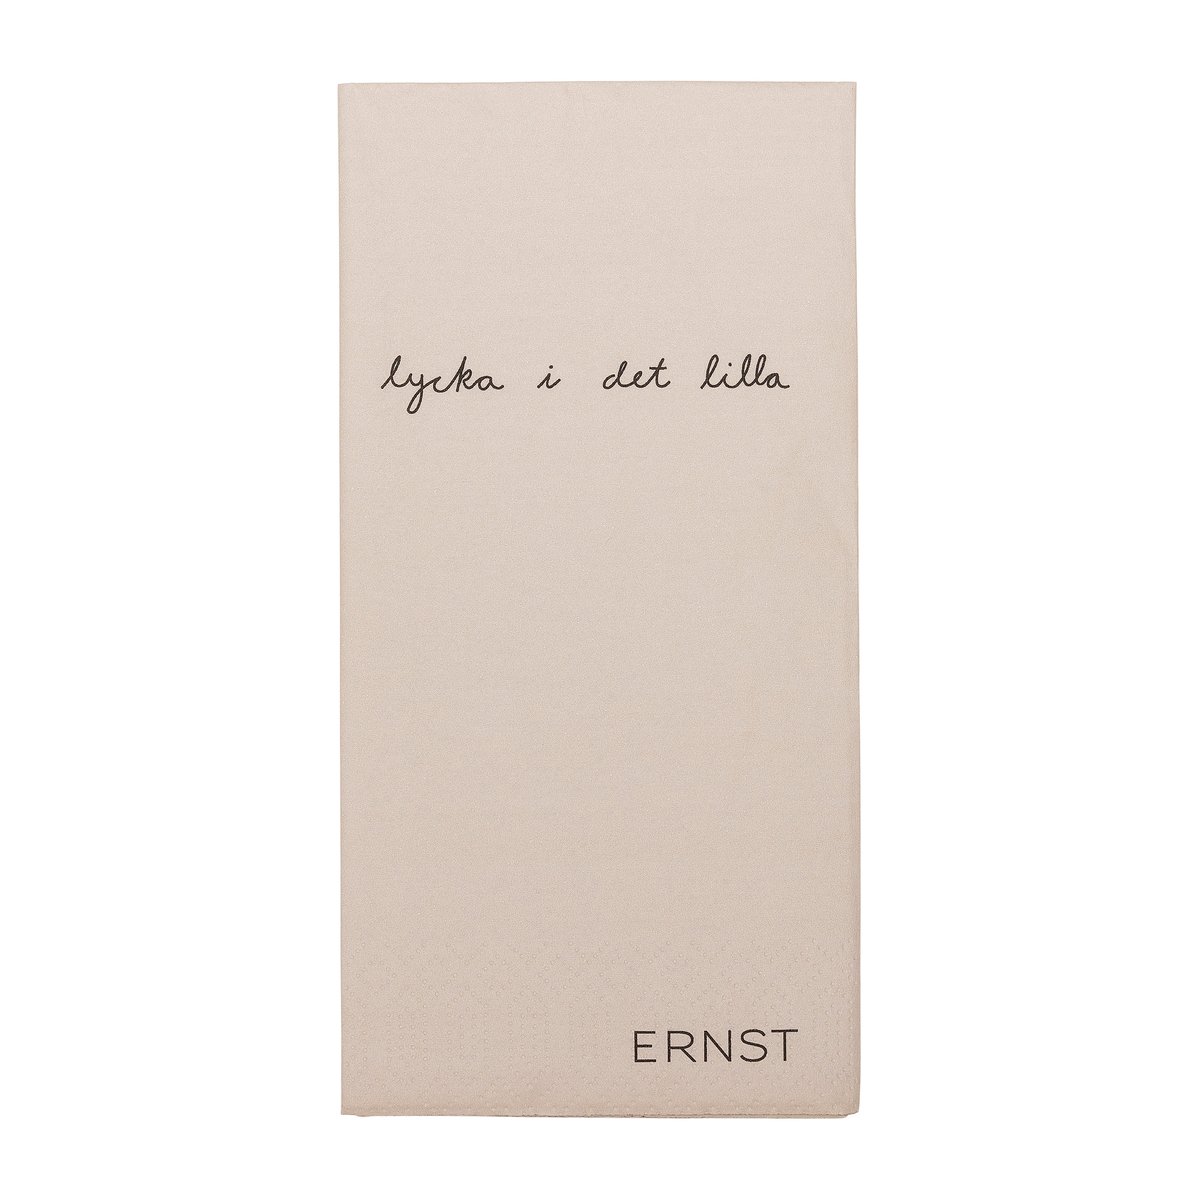 ERNST Ernst lautasliina tekstillä Lycka i det lilla 20-pakkaus Luonnonvärinen-musta